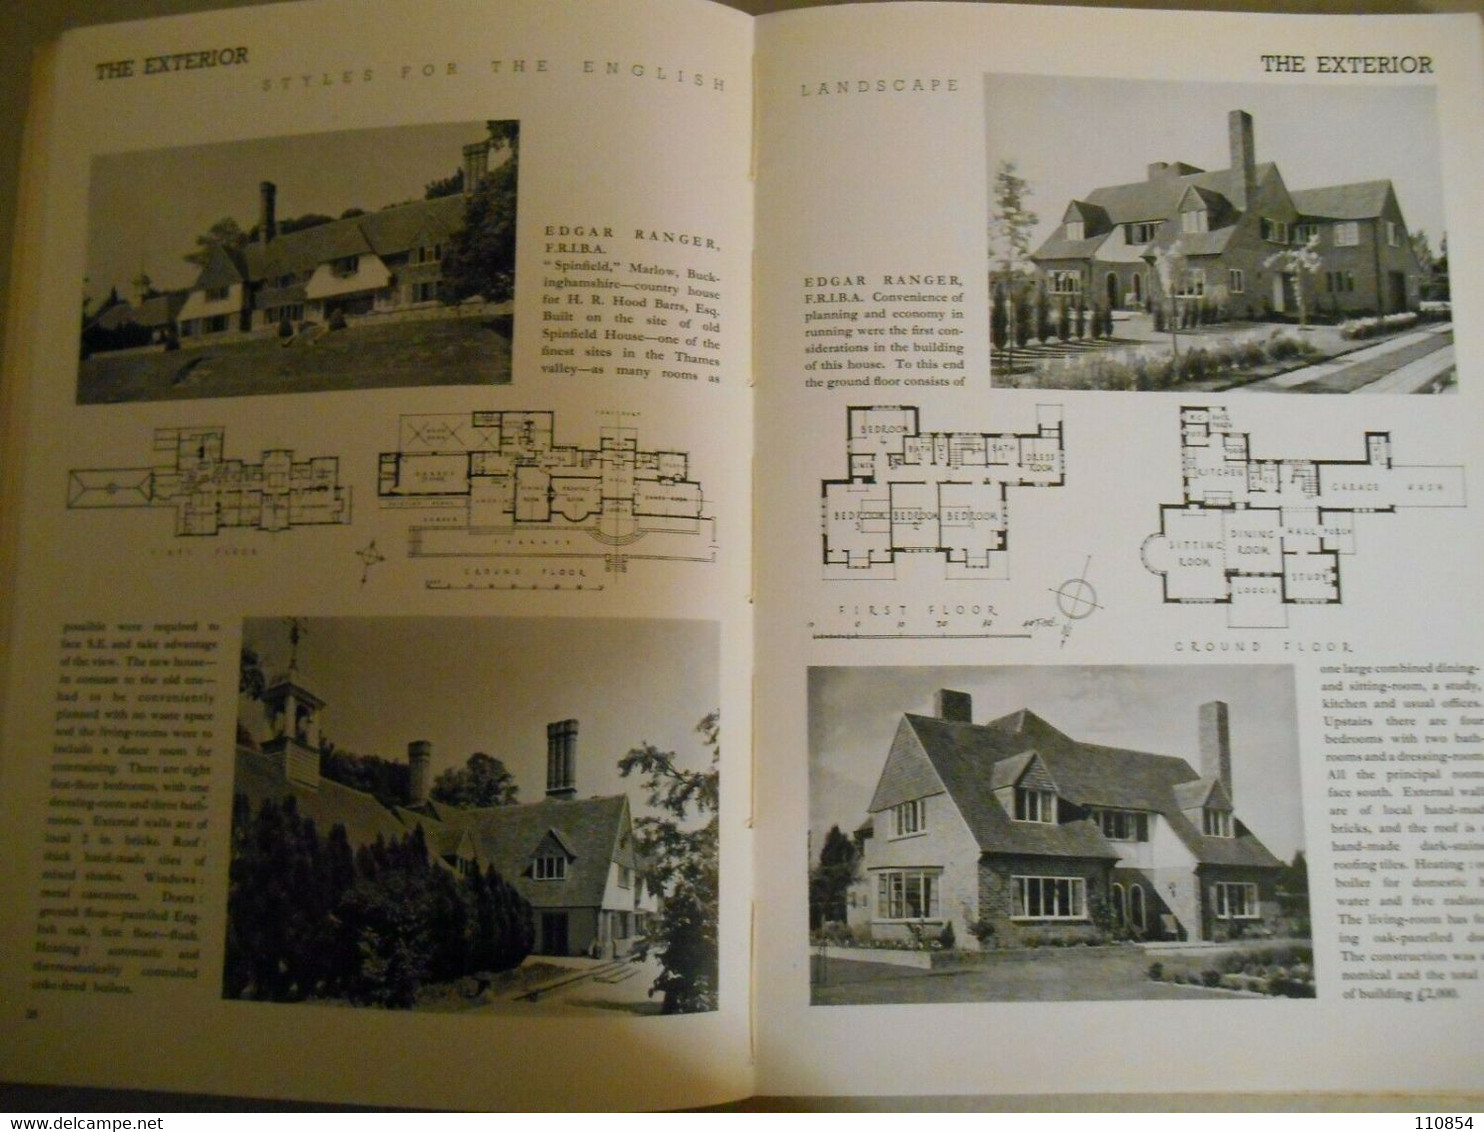 Architettura Ed Arredamento - Decorative Art 1940 -London - New York - Architecture